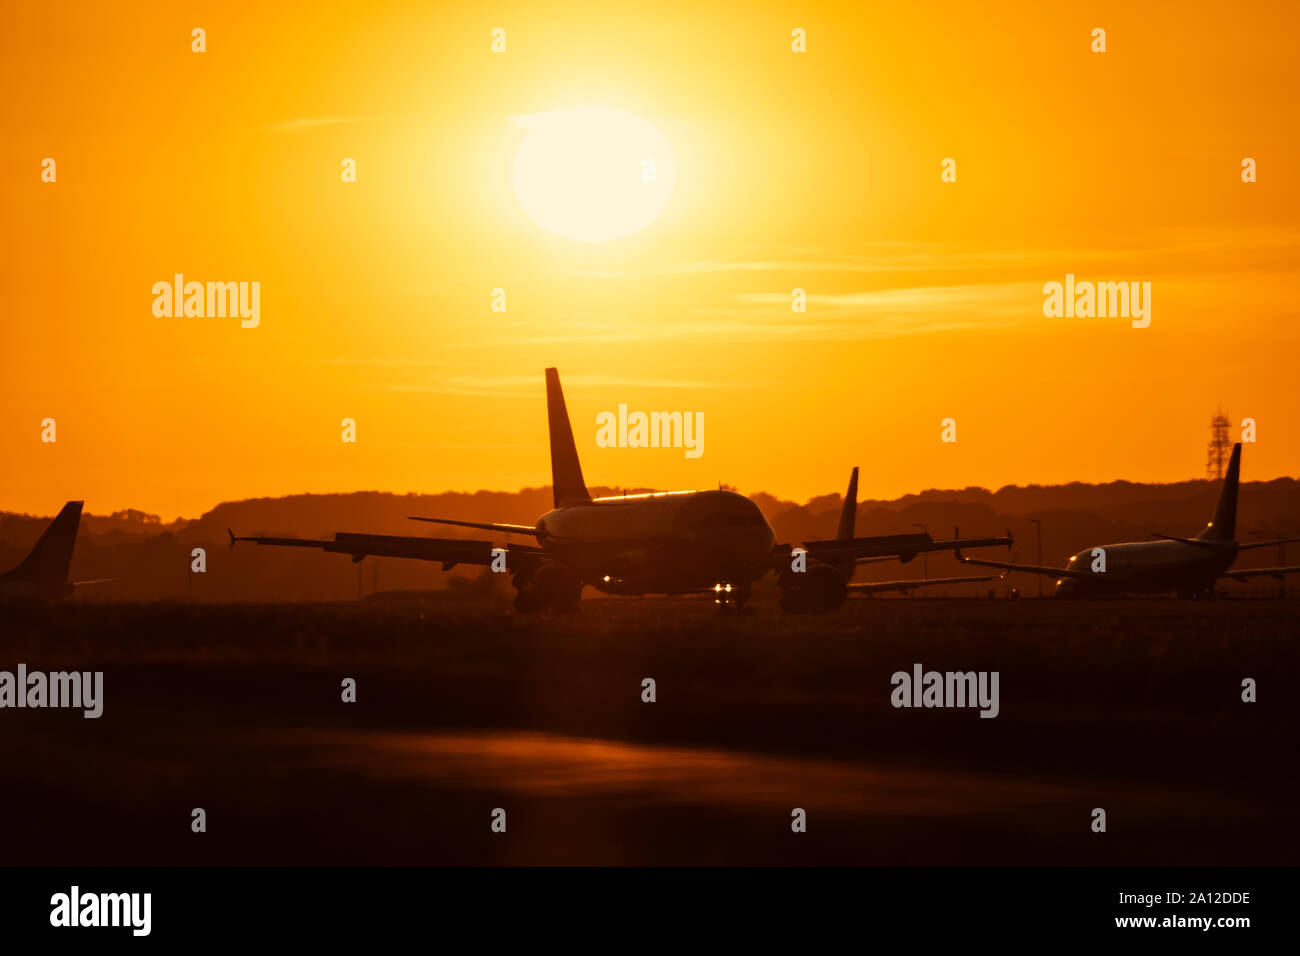 Les terres d'un aéronef pendant le coucher du soleil à l'aéroport de Londres Luton, 19 septembre 2019, Luton, Bedfordshire, Royaume-Uni Banque D'Images